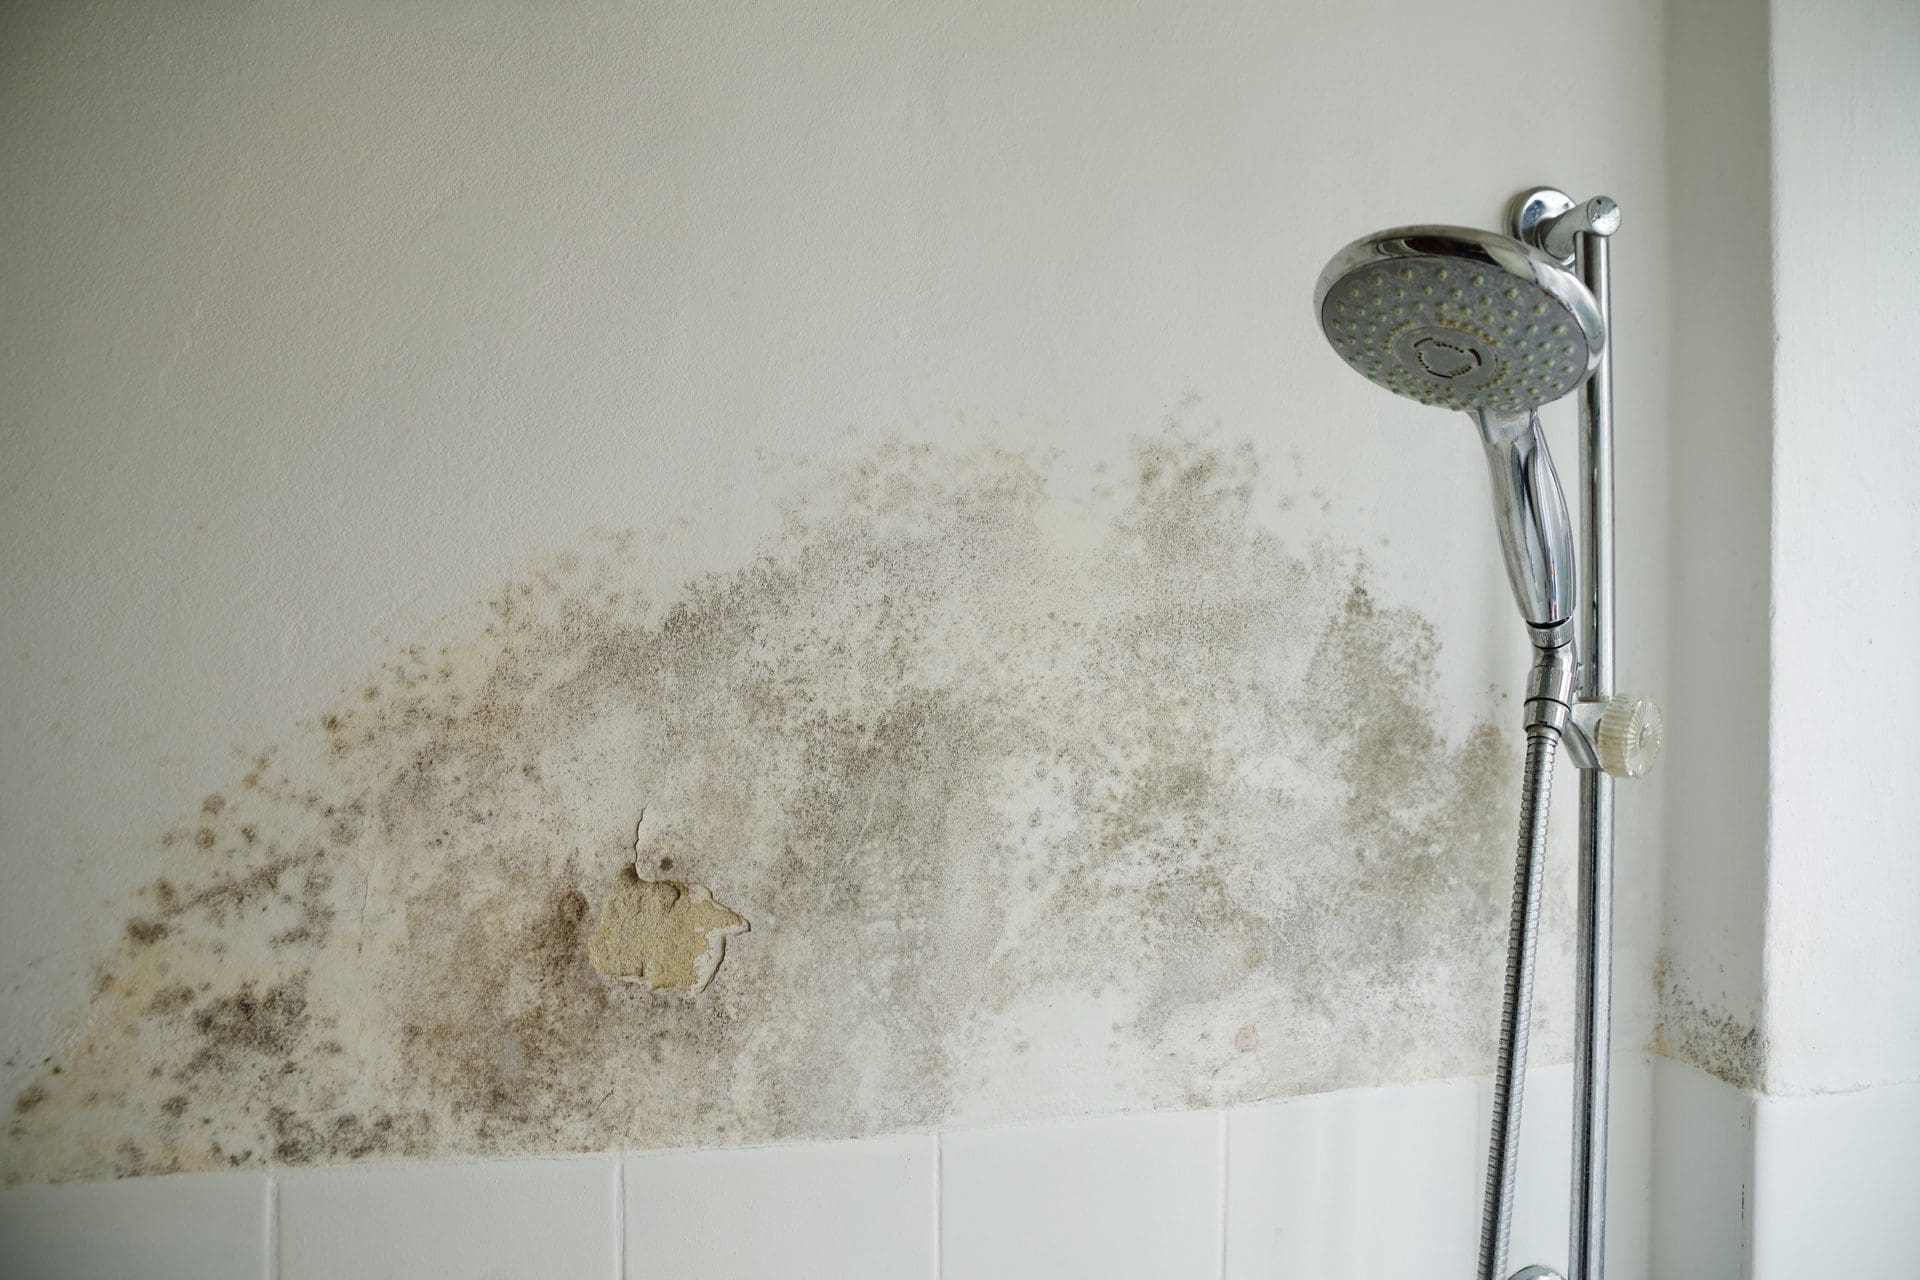 Schimmel im Badezimmer - wie entfernen? (© Wellnhofer Designs / stock.adobe.com)